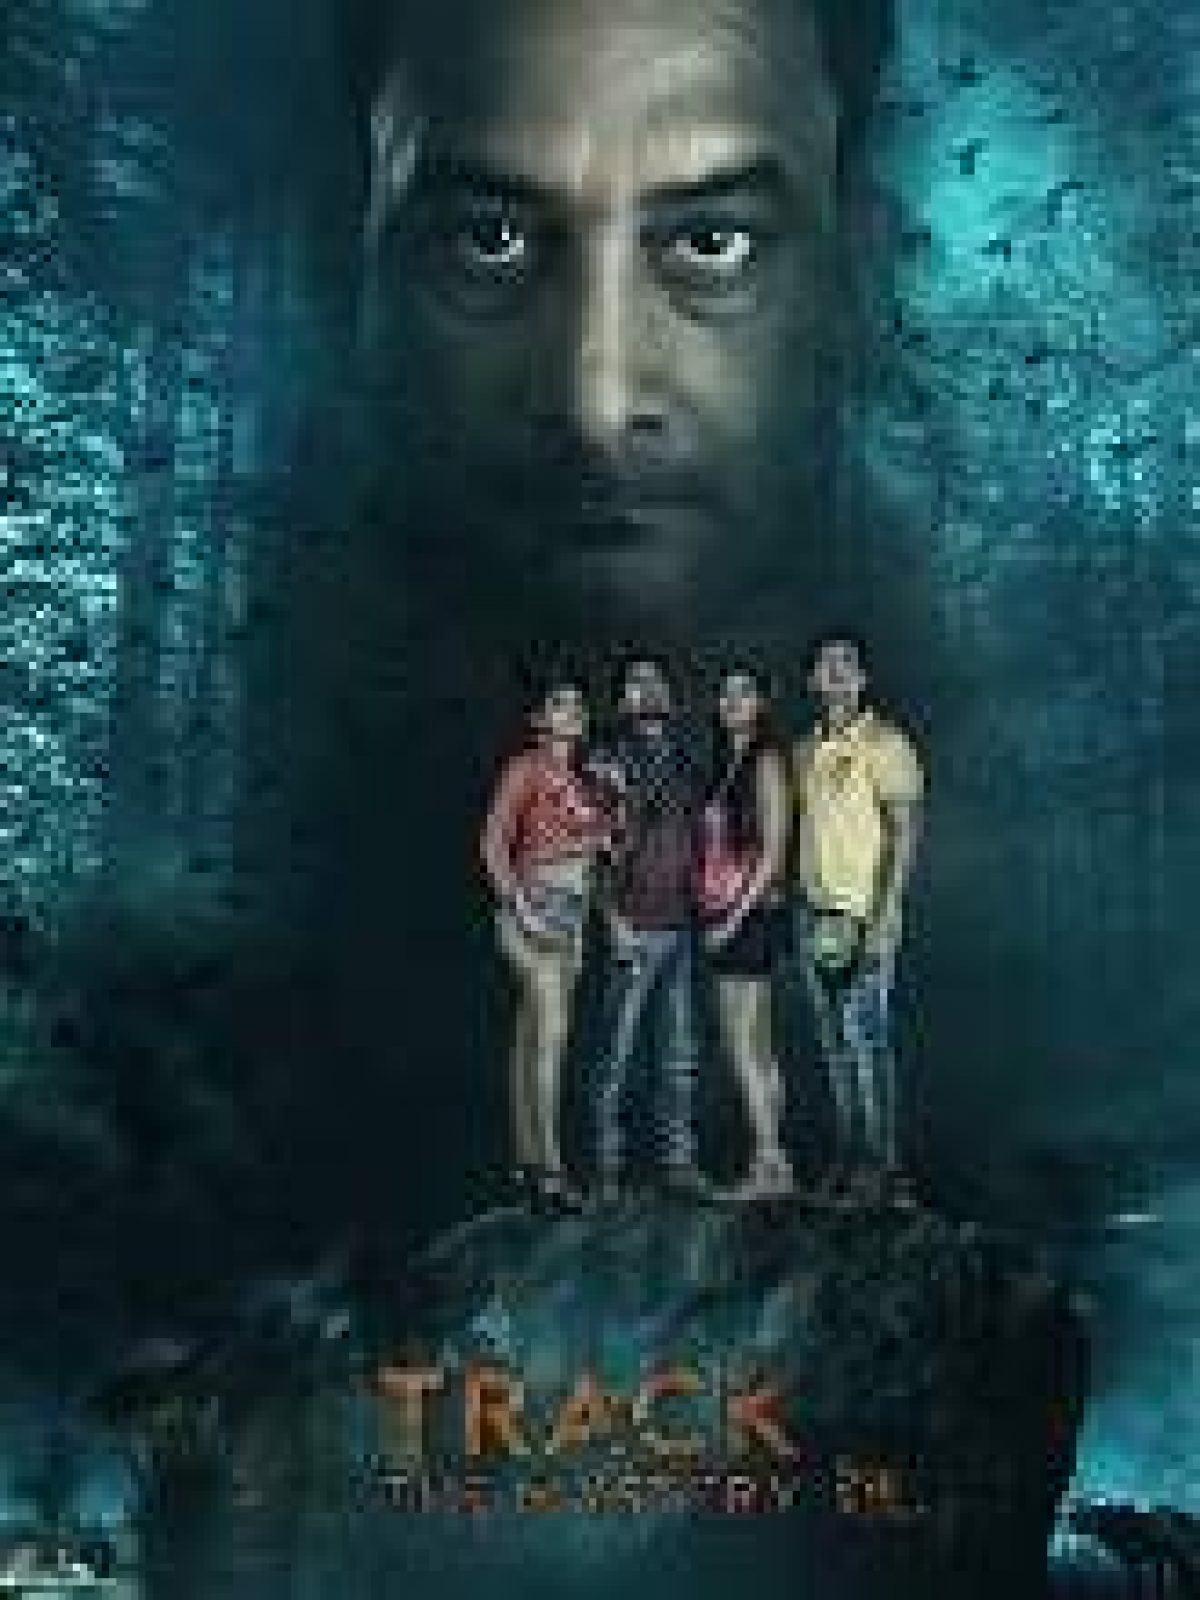 die hard 4 full movie in hindi free download 720p